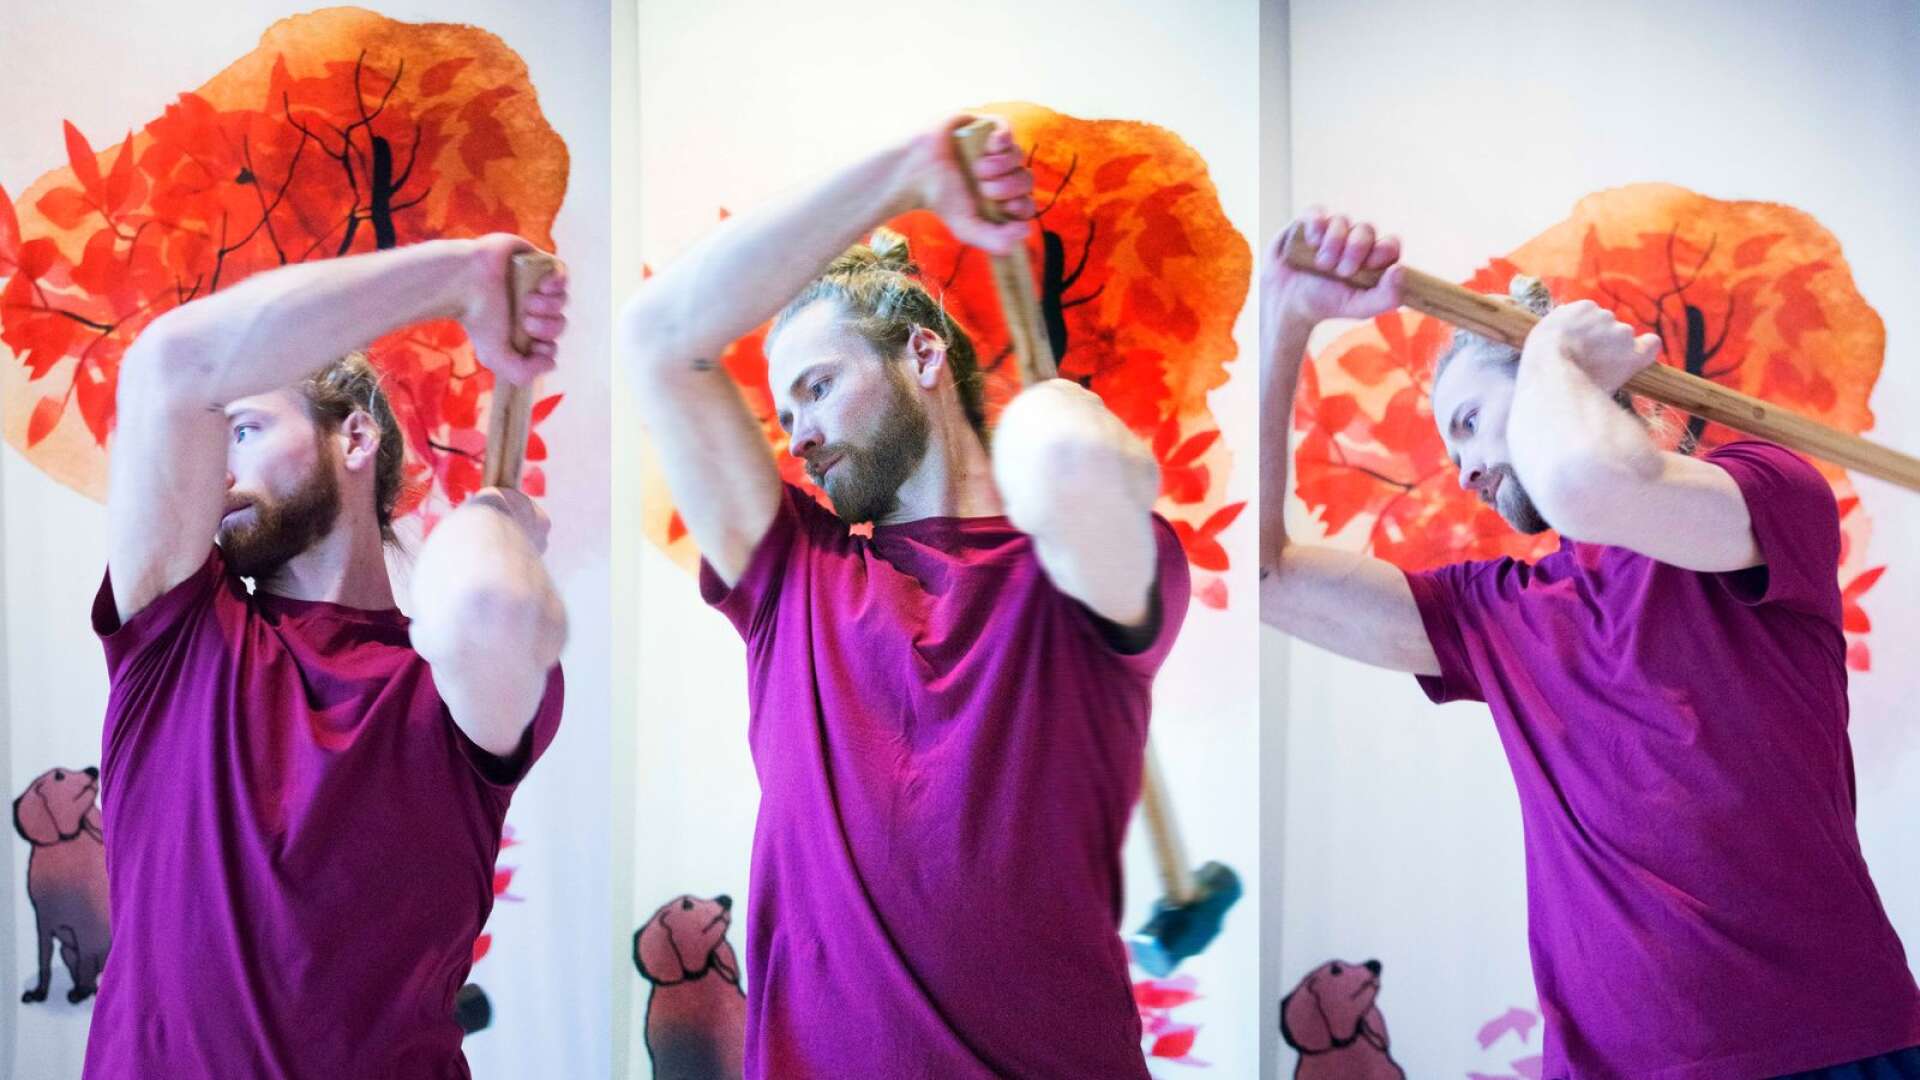 Erik Eriksson från Karlstad använder en slägga i sin dans. Han är en av 14 danskonstnärer som deltar i storsatsningen ”Room X” på Värmlands museum i helgen.